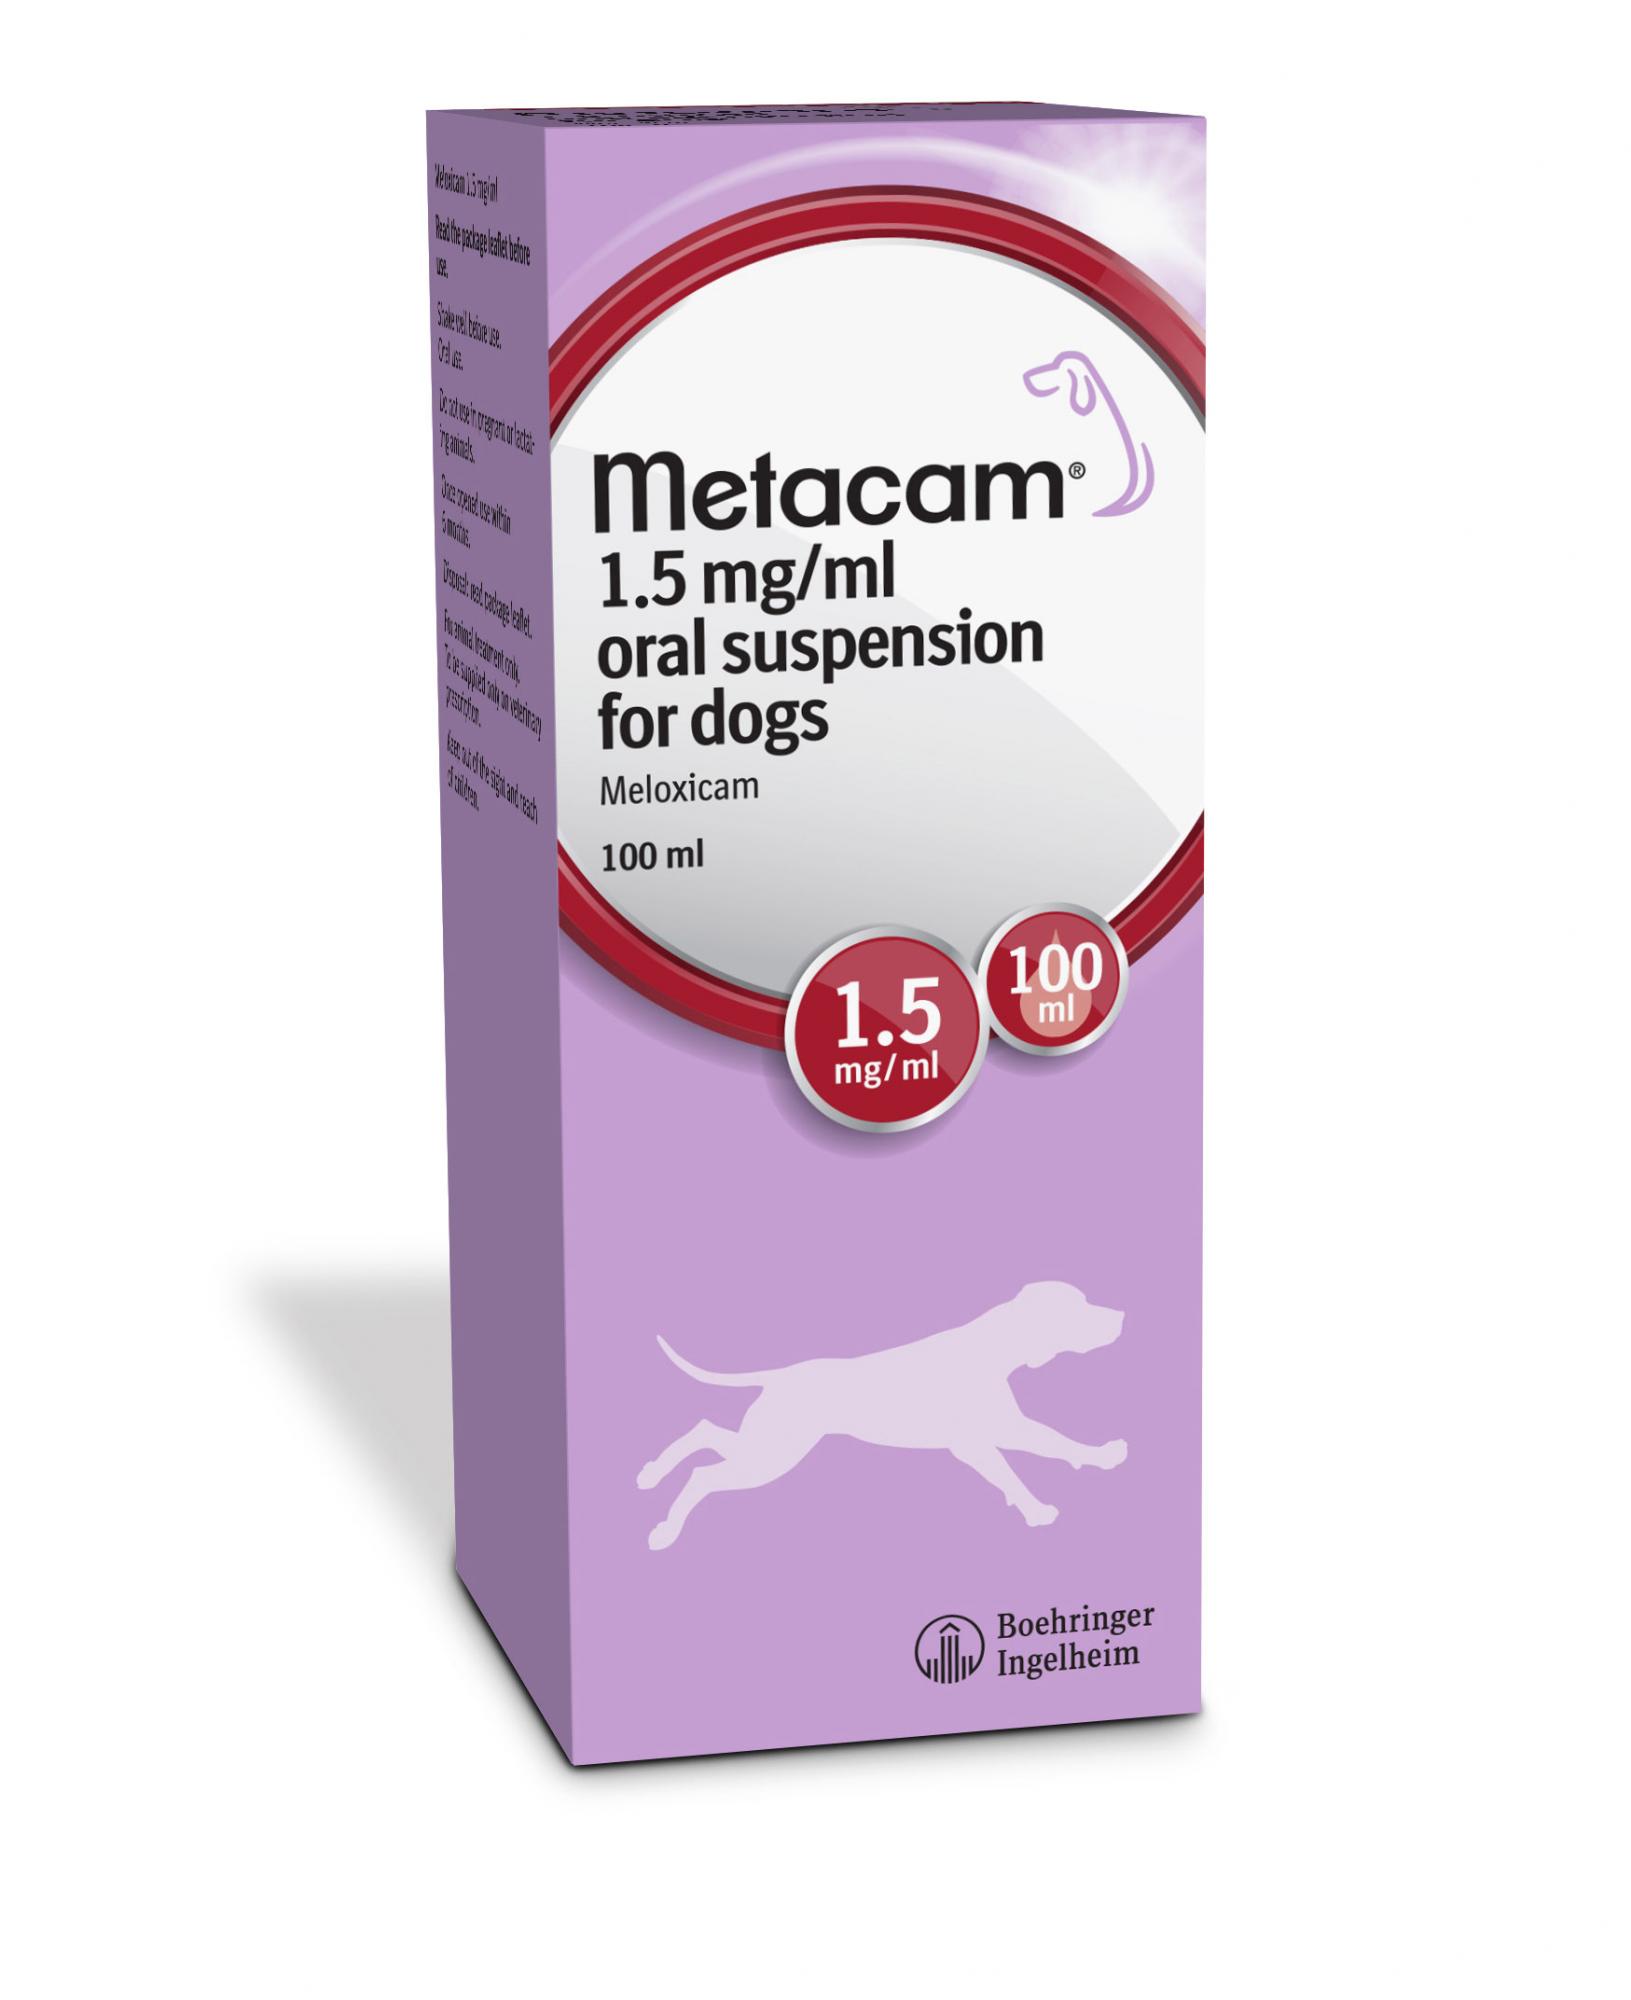 metacam-viovet-metacam-for-dogs-metacam-for-cats